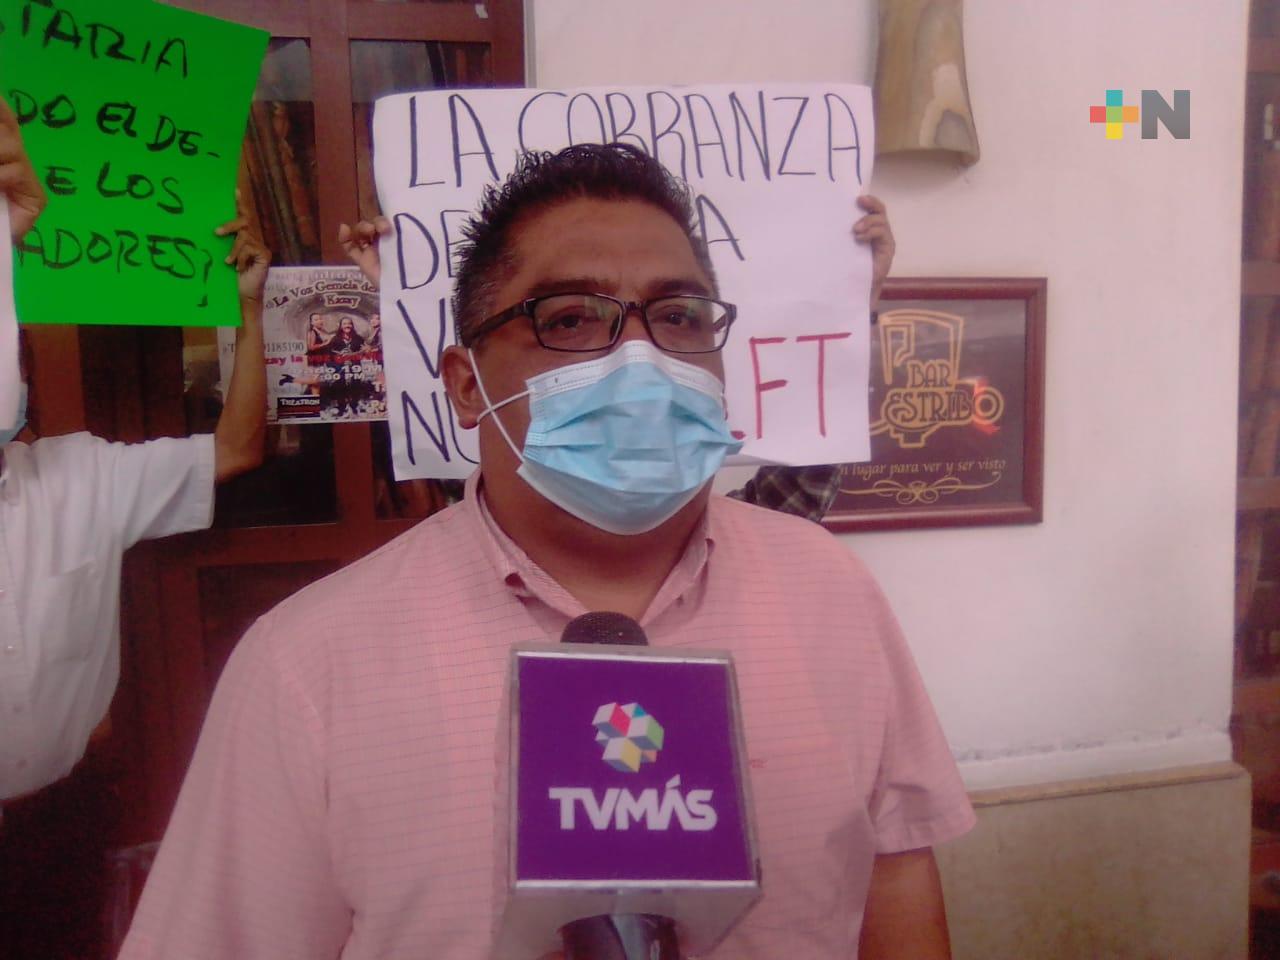 Persisten vacantes en el sector restaurantero de Veracruz: Alberto Portugal